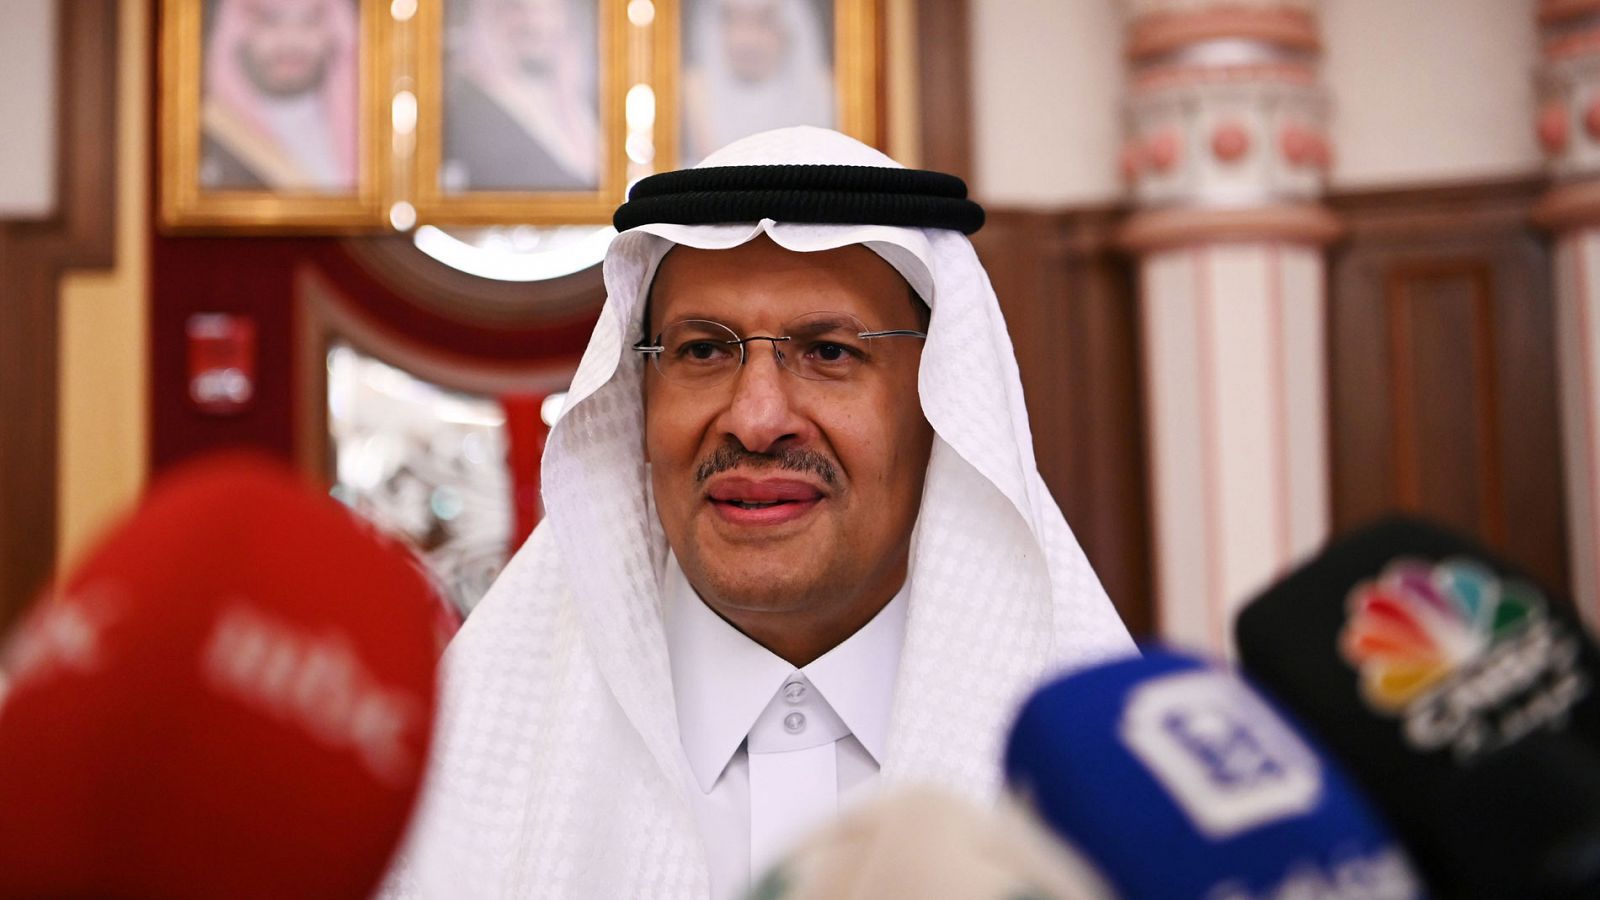 El ministro de Energía de Arabia saudí, el príncipe Abdulaziz bin Salman, dice que los suministros de petróleo regresan a los niveles anteriores